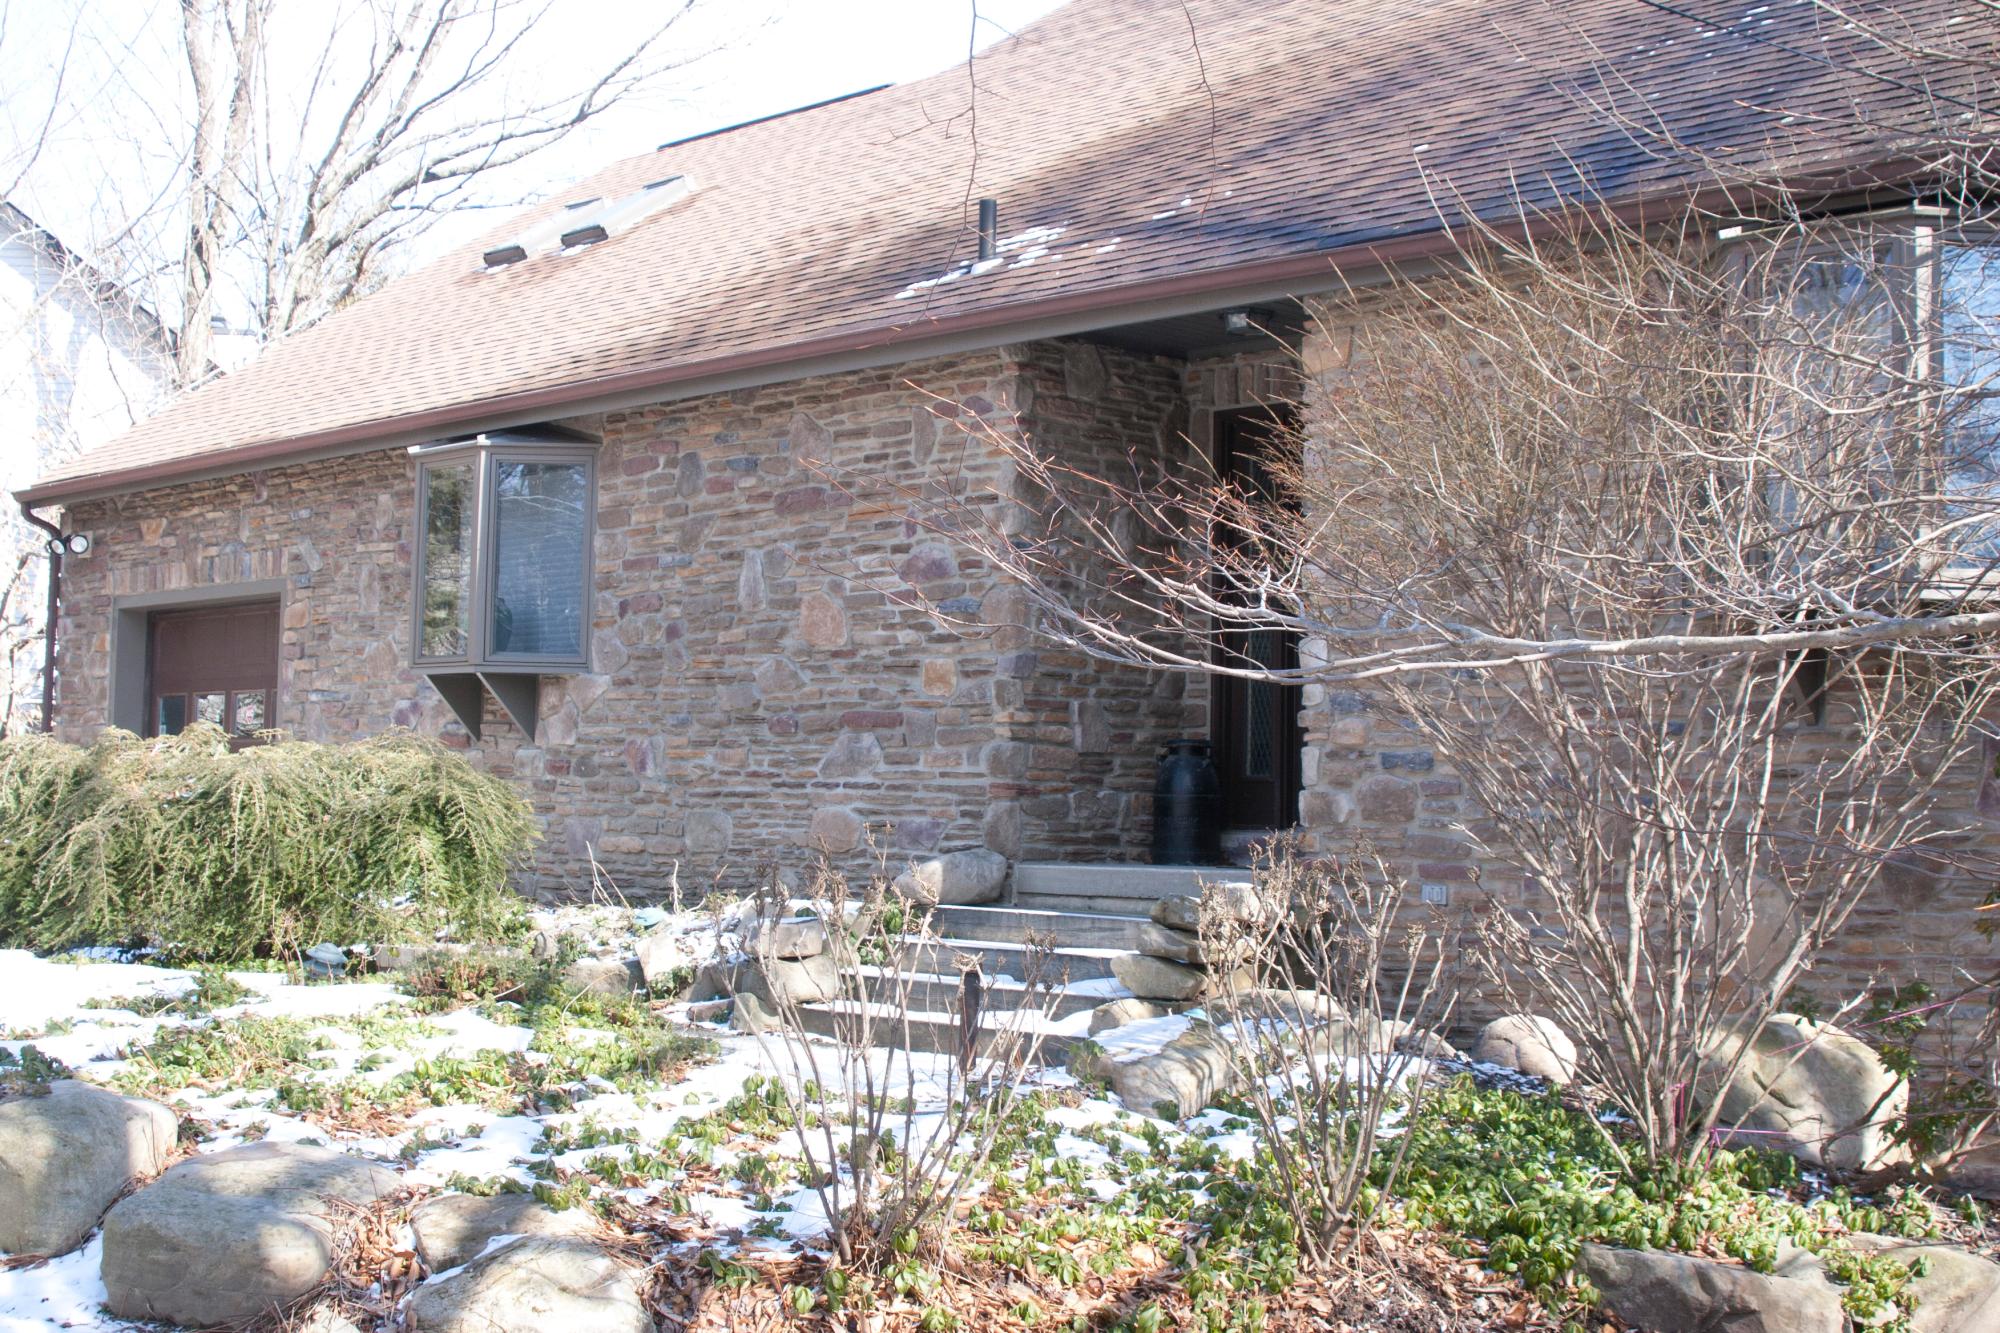 Filed stone / Ledge stone house front